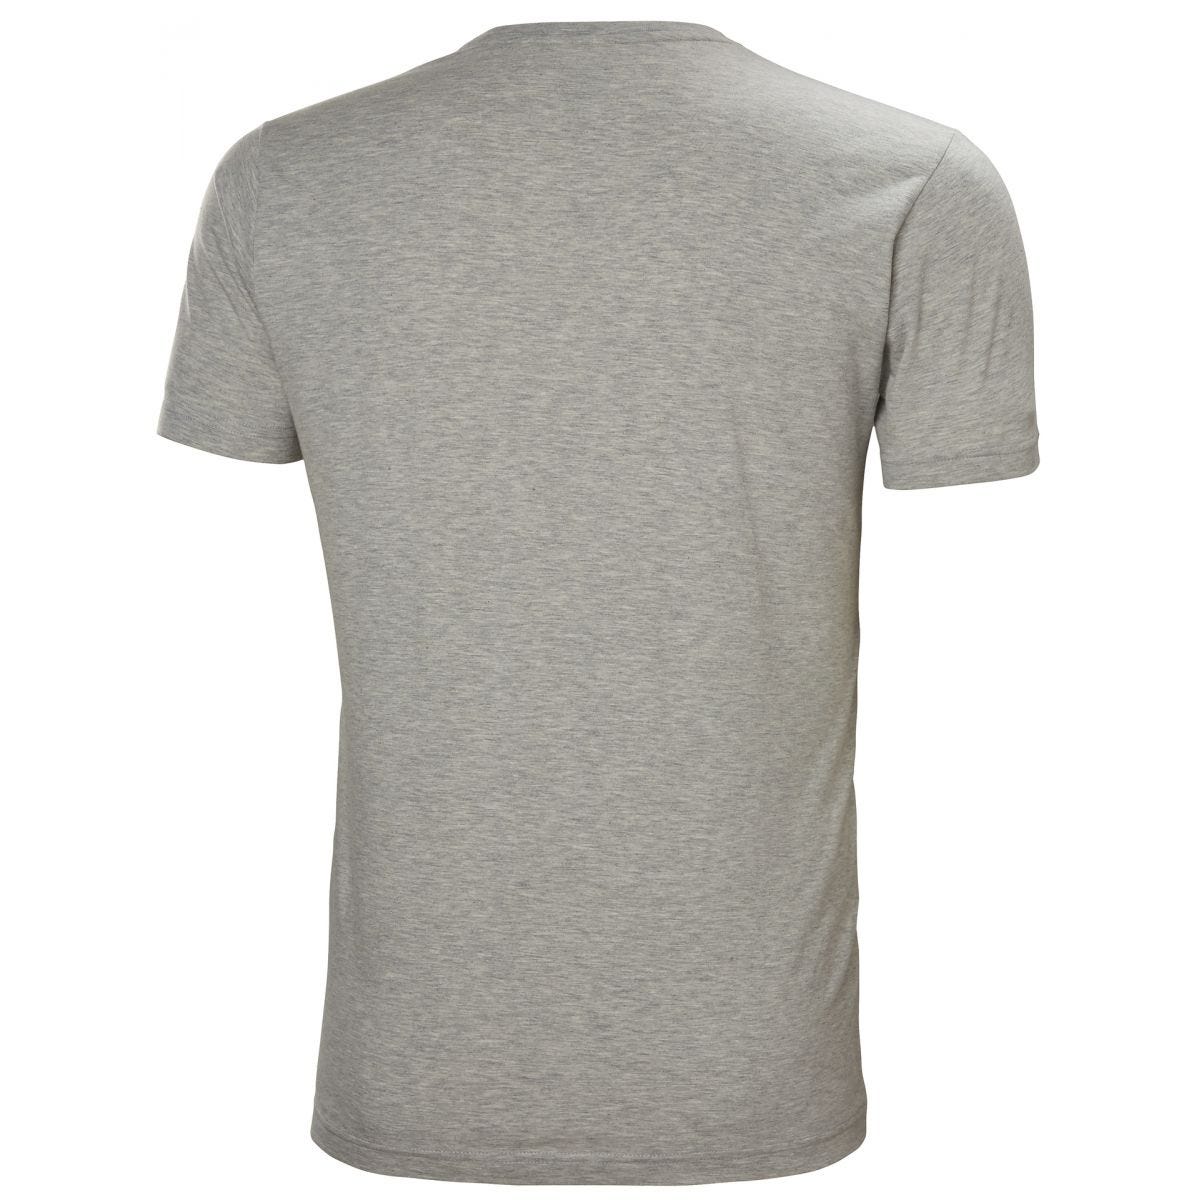 Tee-shirt Kensington Gris/Camo - Helly Hansen - Taille XL 1